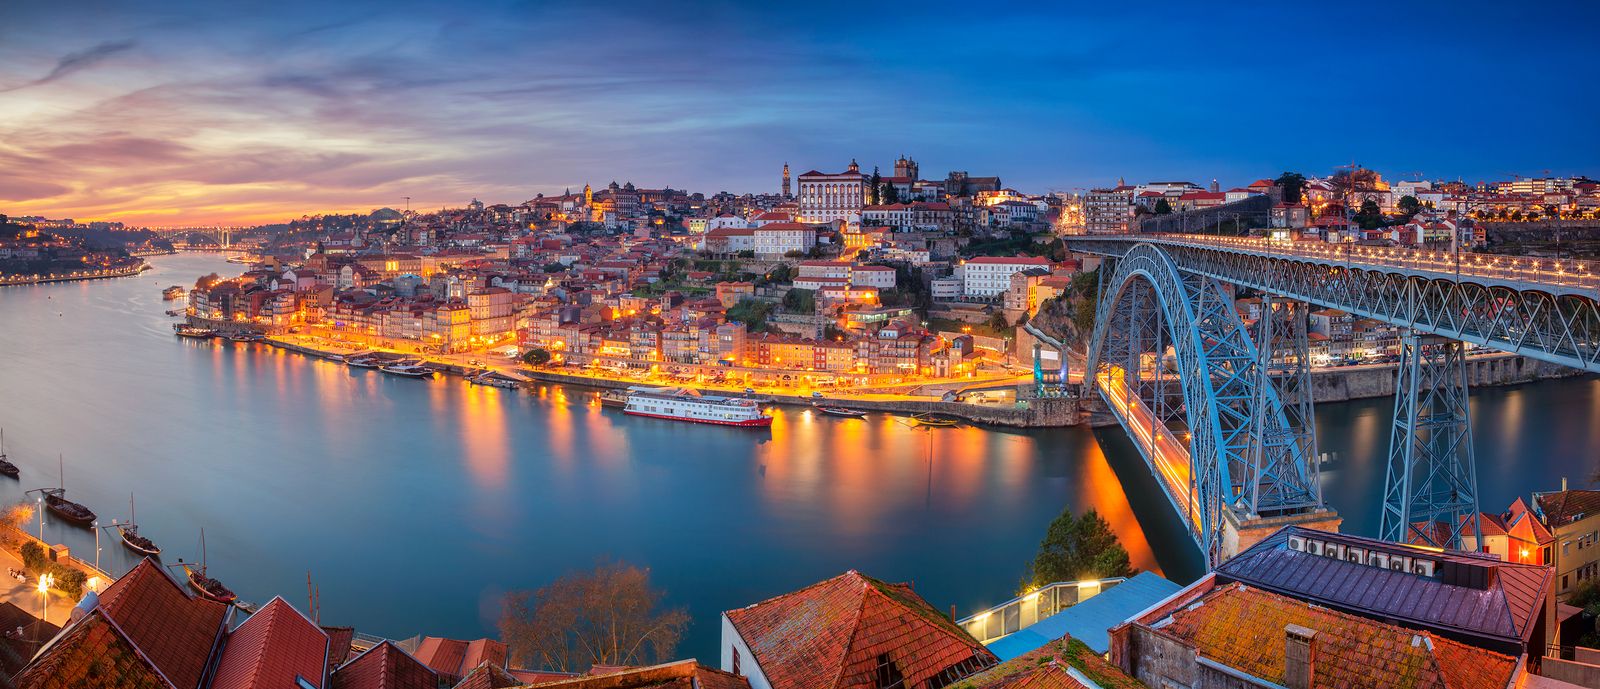 Los puentes más espectaculares de Europa: Oporto